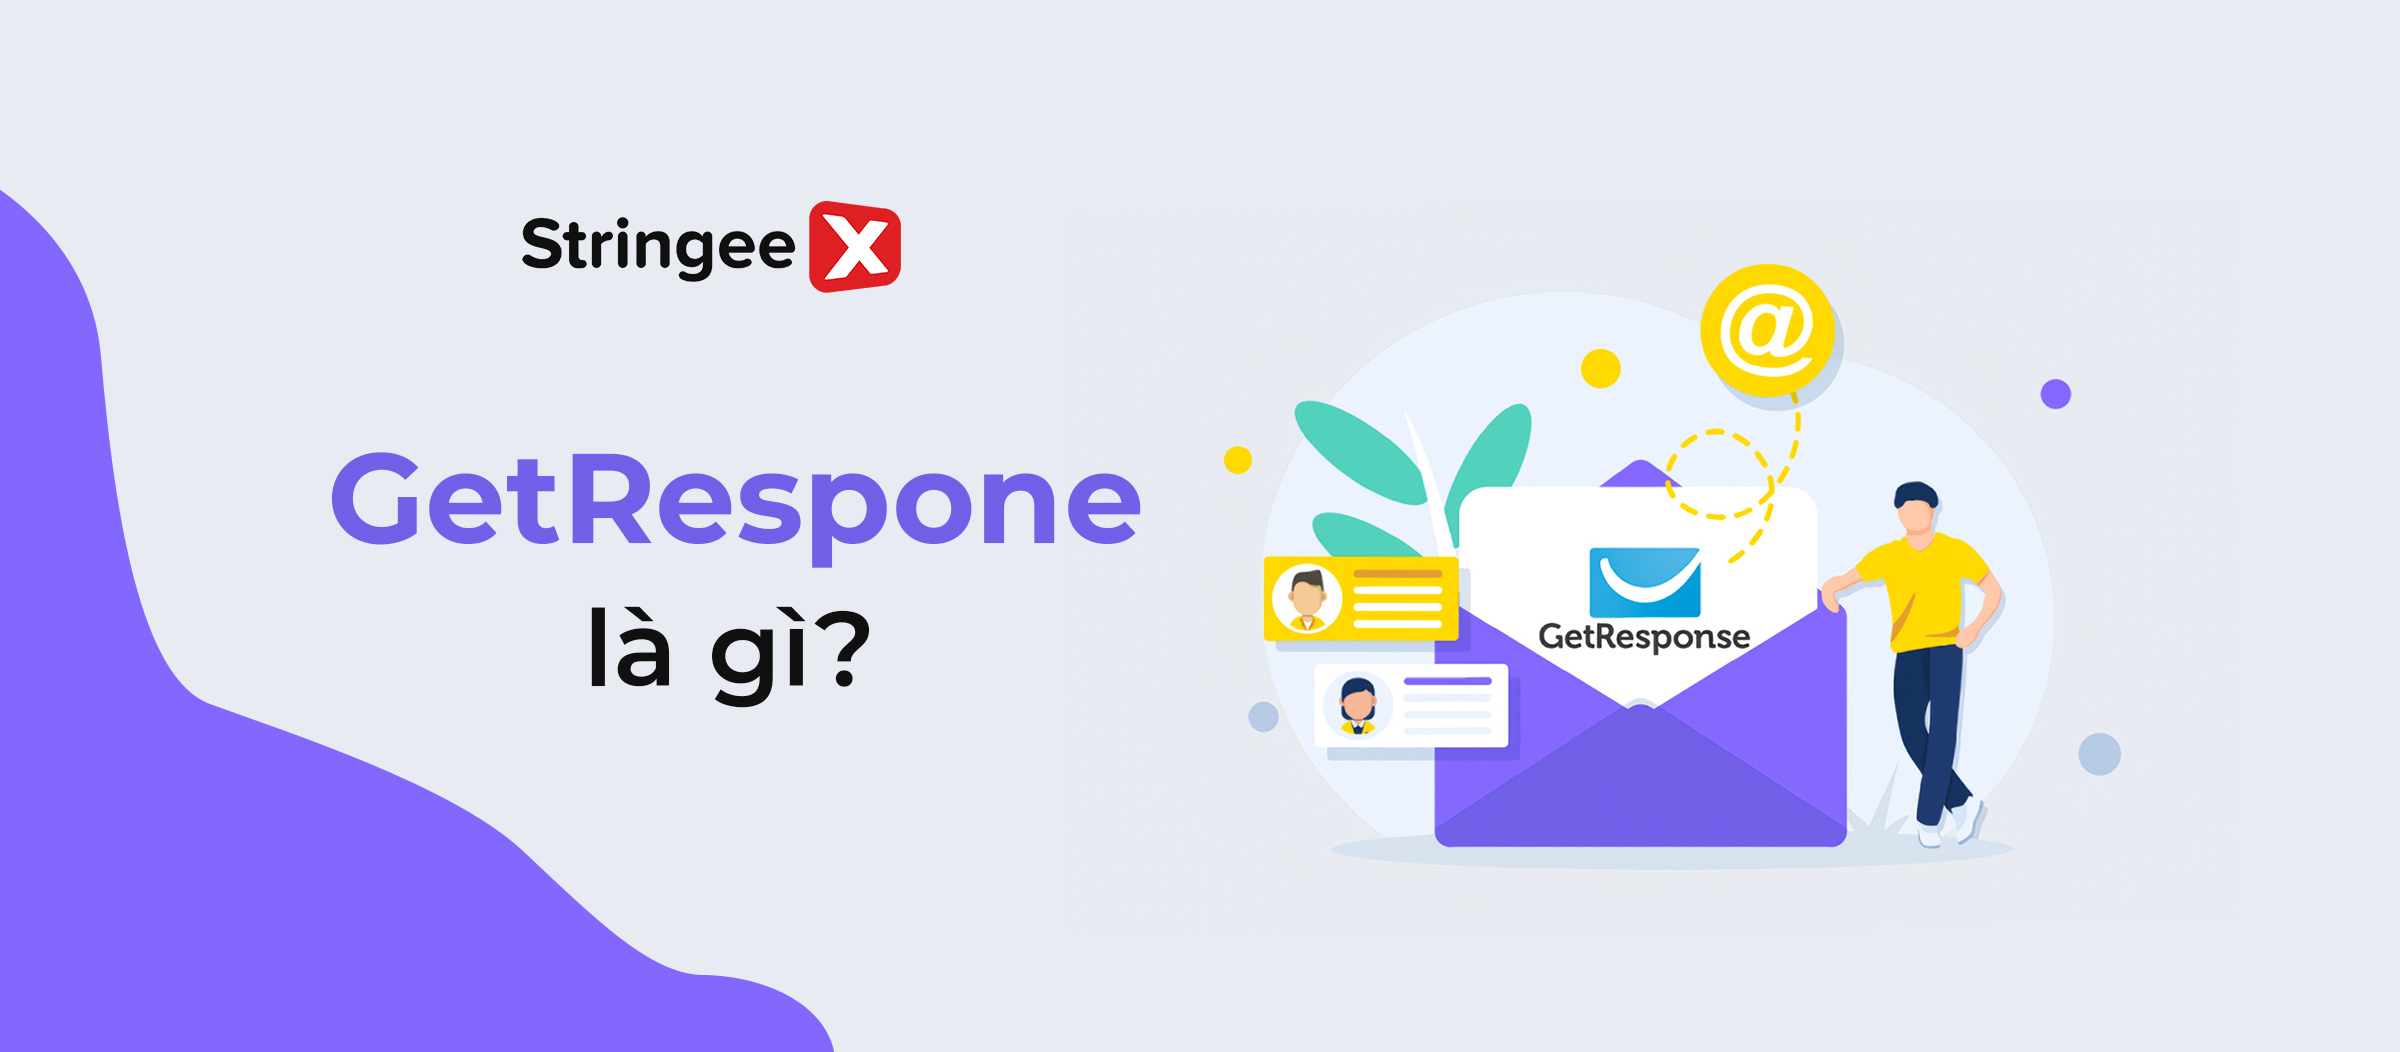 GetResponse là gì? Tất tần tật thông tin về GetResponse cho người mới